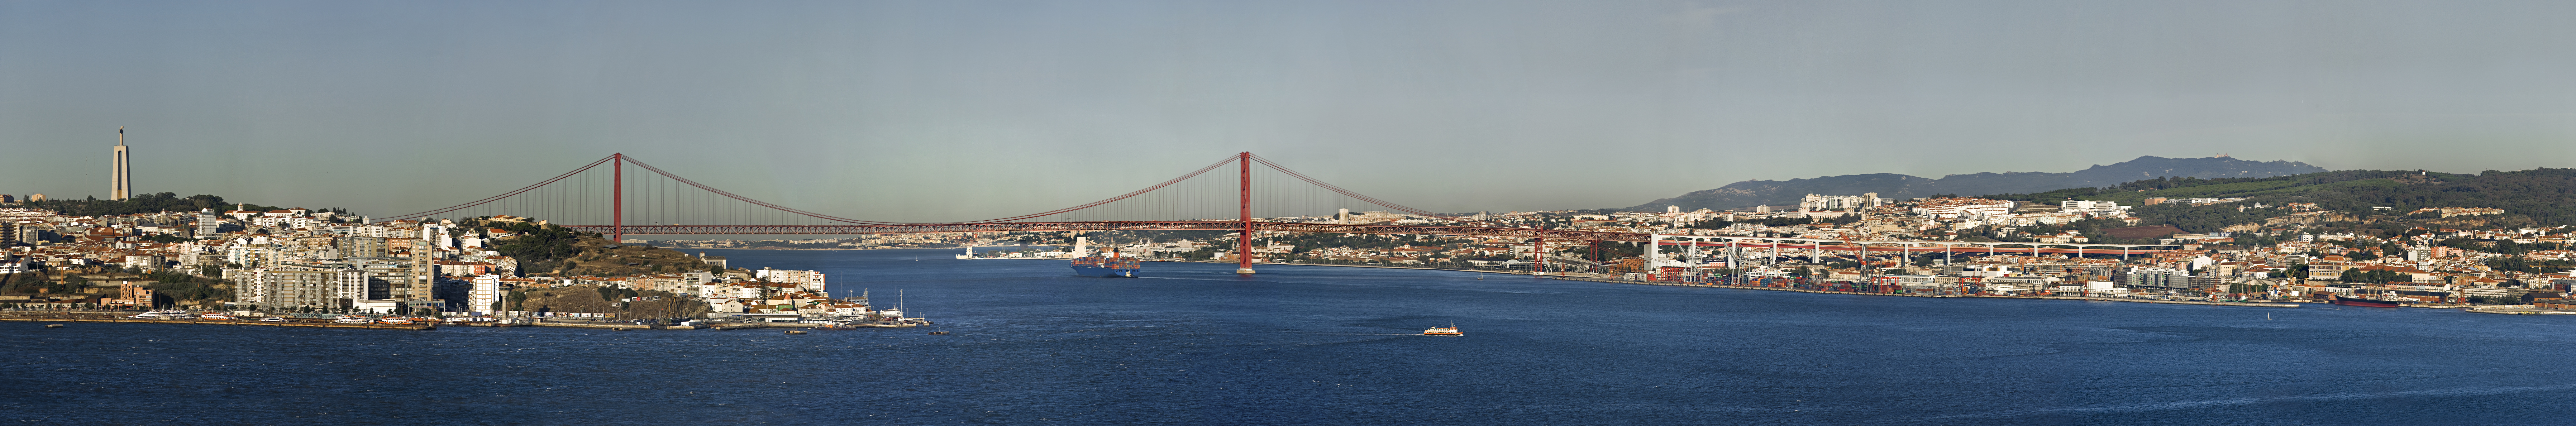 Em destaque no porto de Lisboa